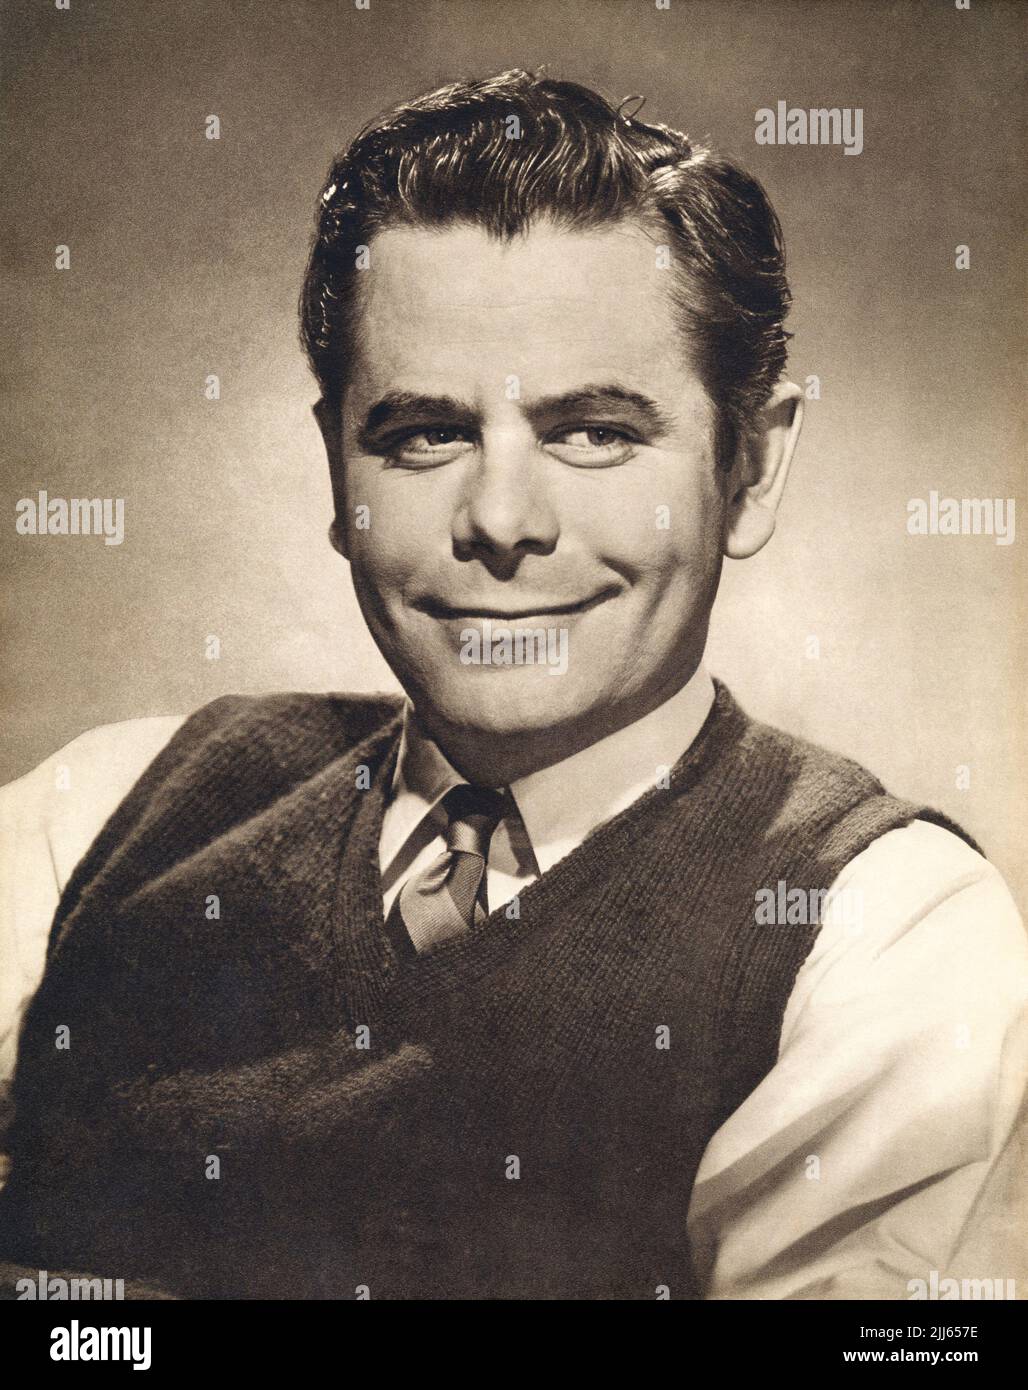 Vintage 1951 foto publicitaria del actor de cine de Hollywood Glenn Ford. Foto de stock